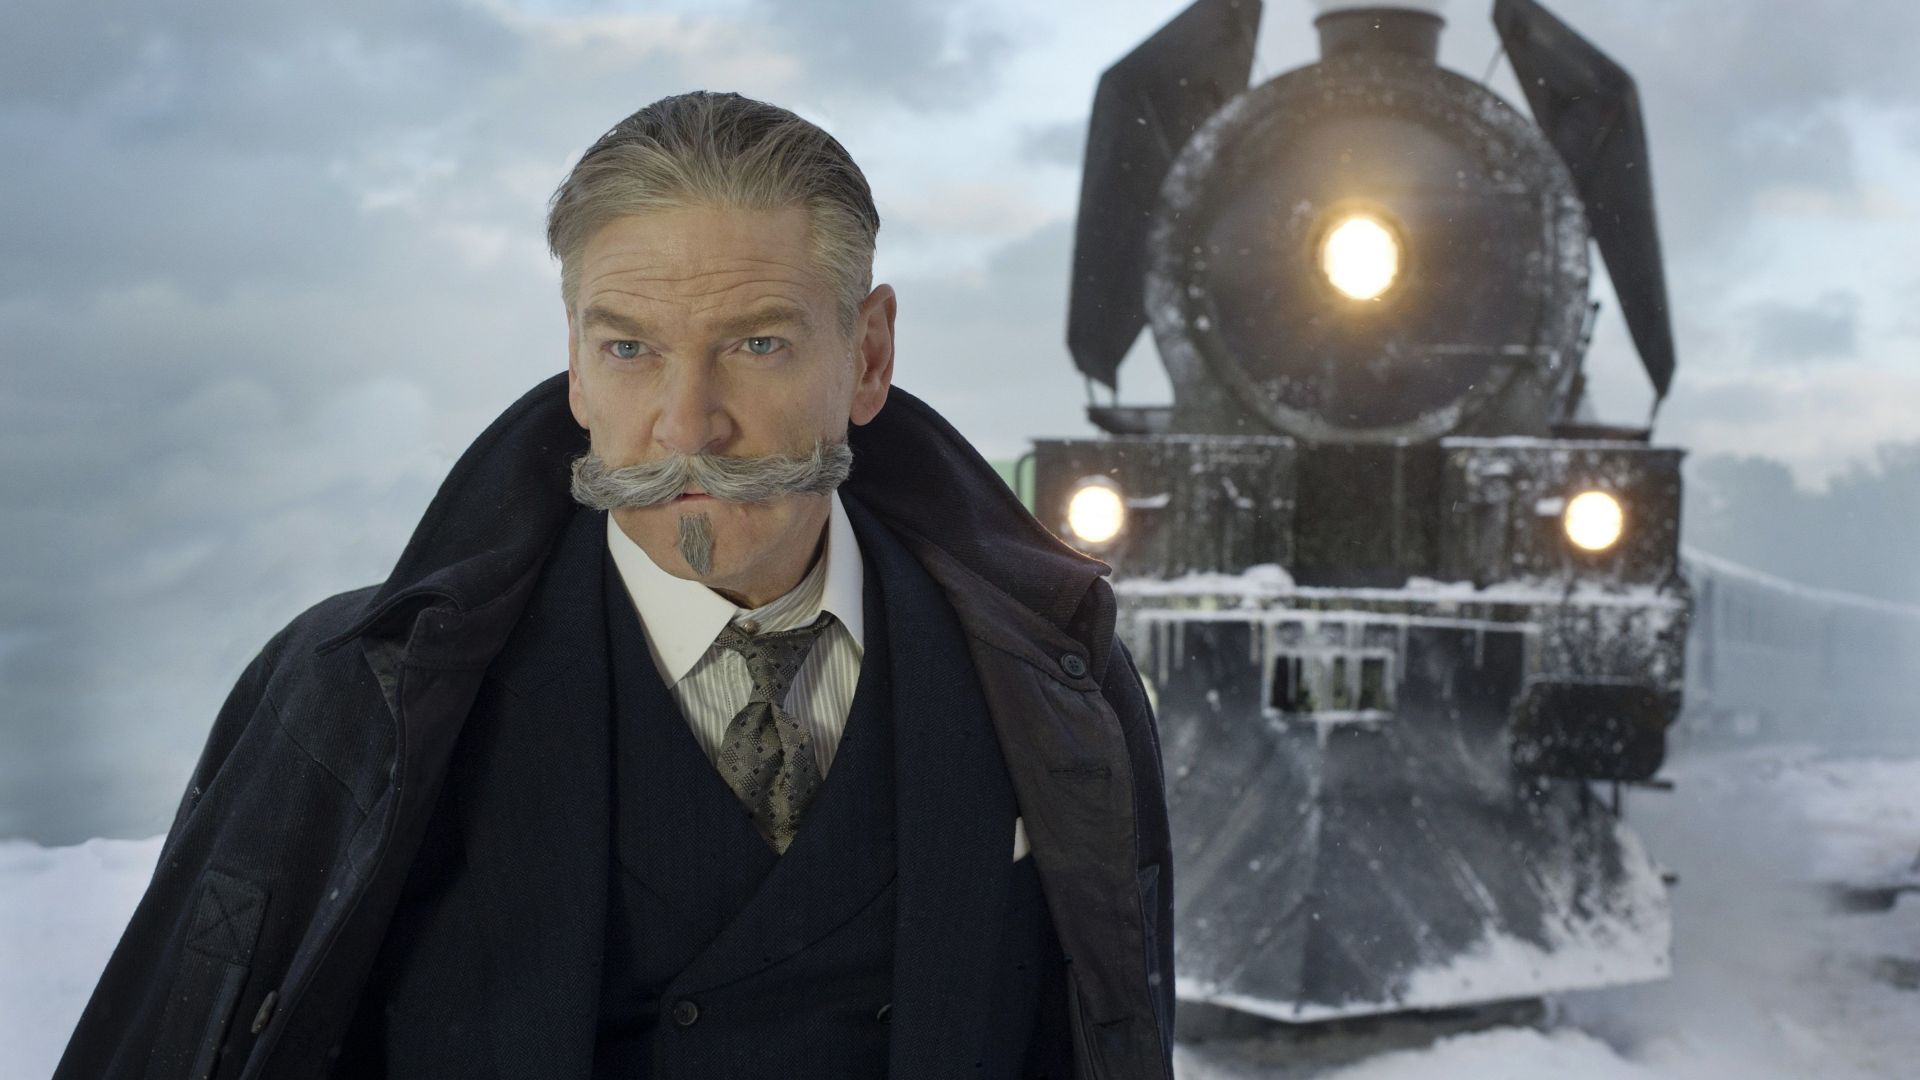 Wallpaper Murder on the Orient Express, 2017 movie, train, Kenneth Branagh